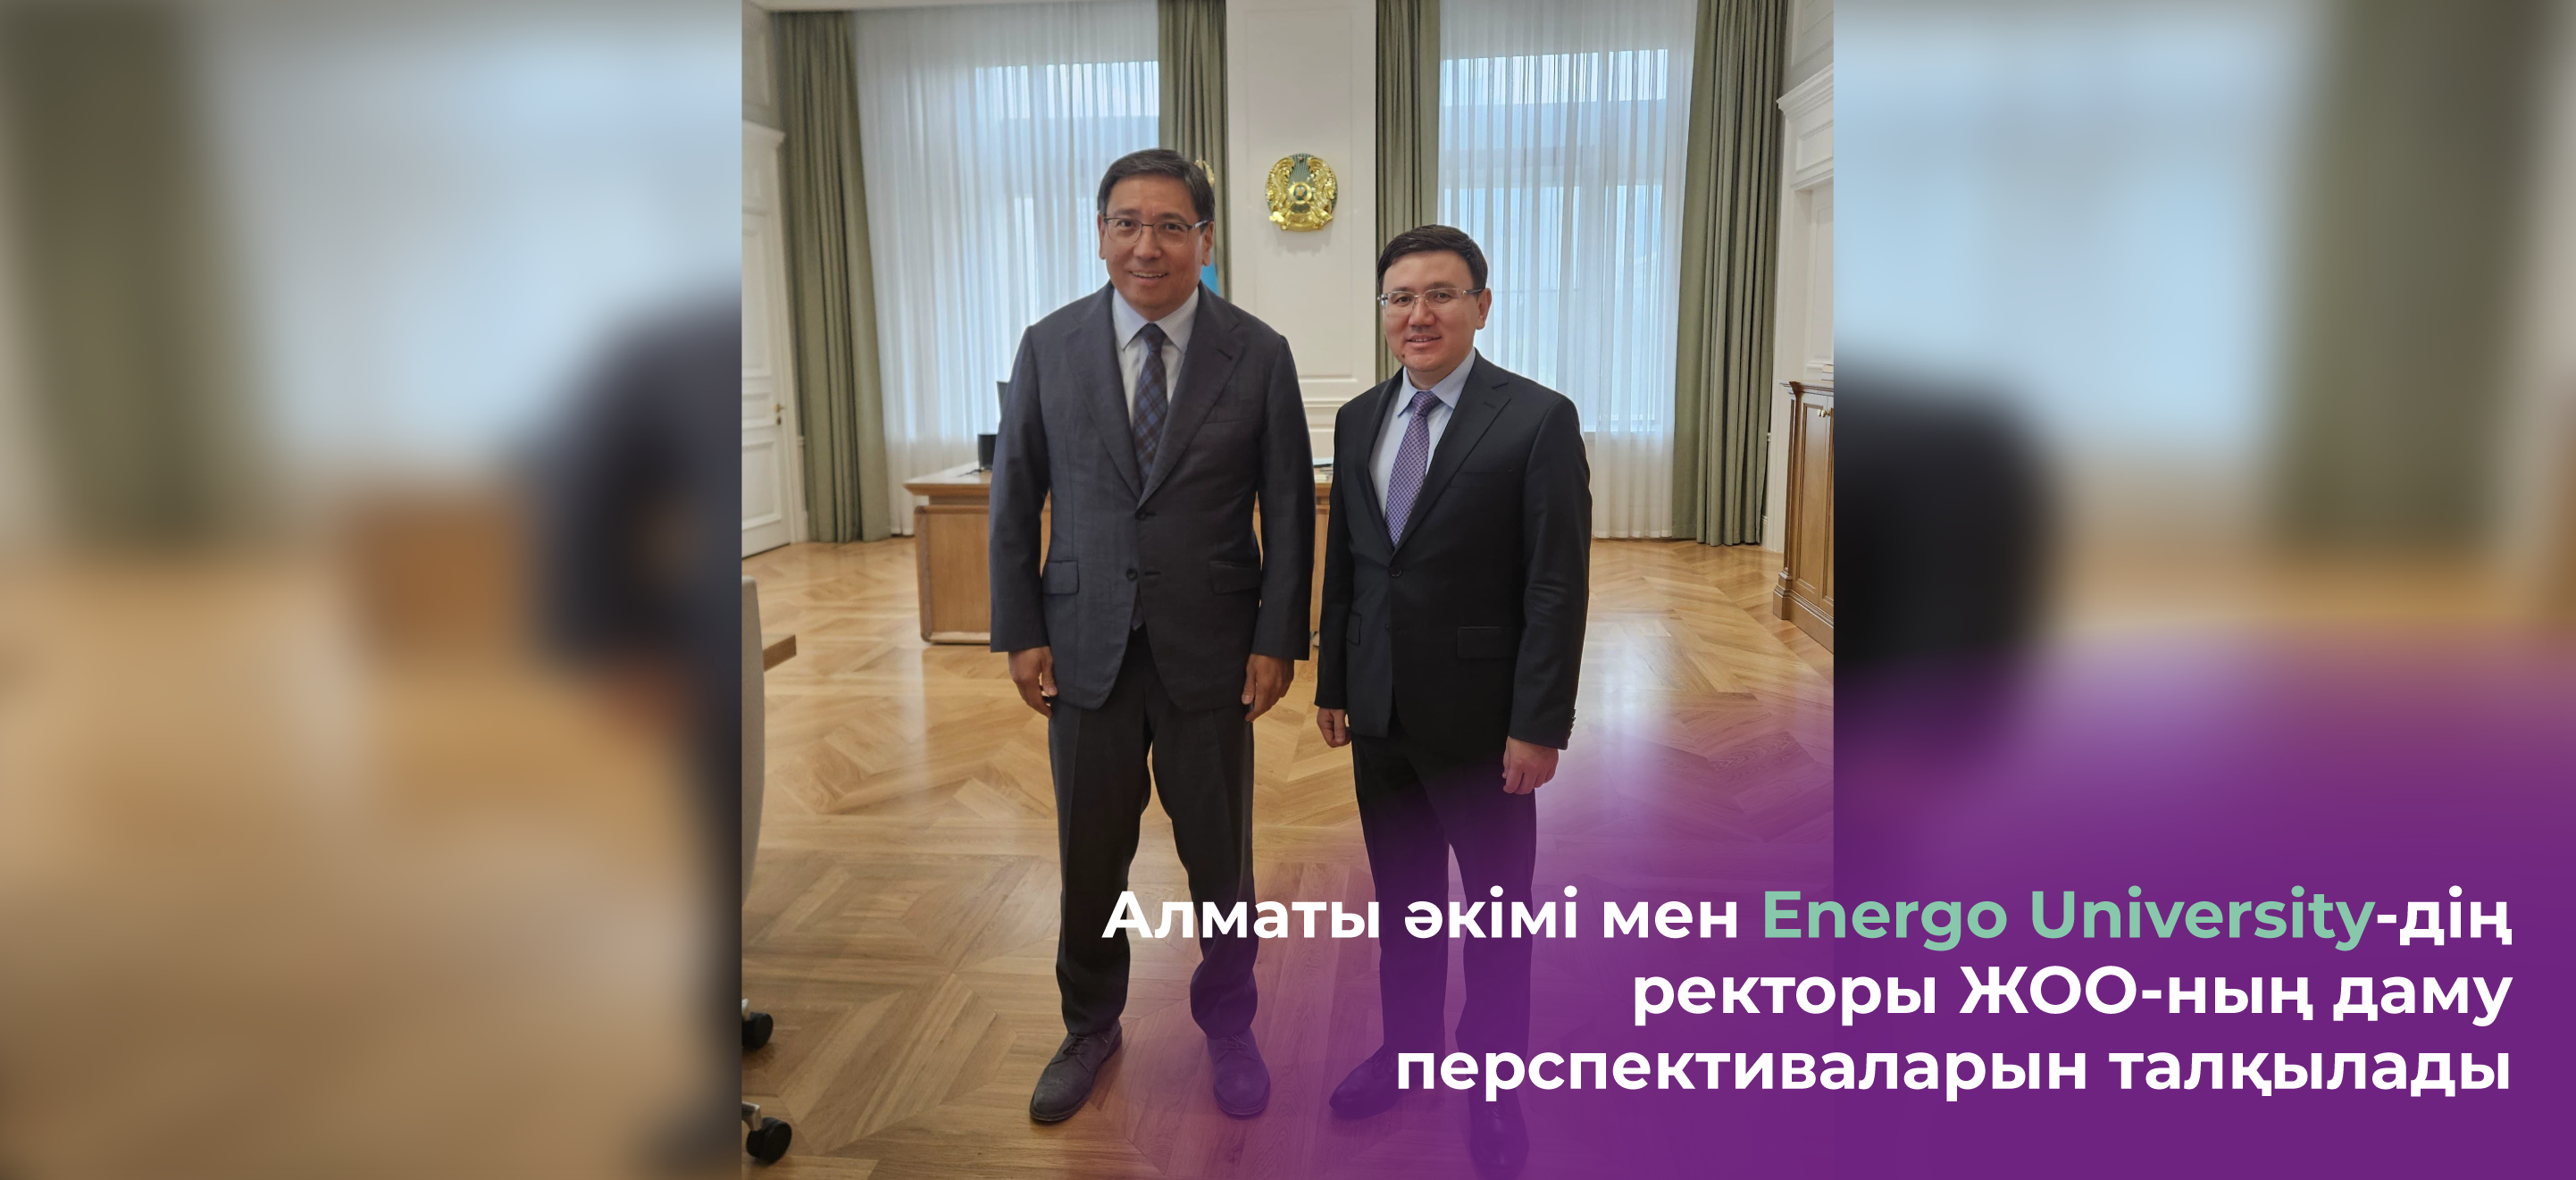 Алматы әкімі мен Energo University-дің ректоры ЖОО-ның даму перспективаларын талқылады